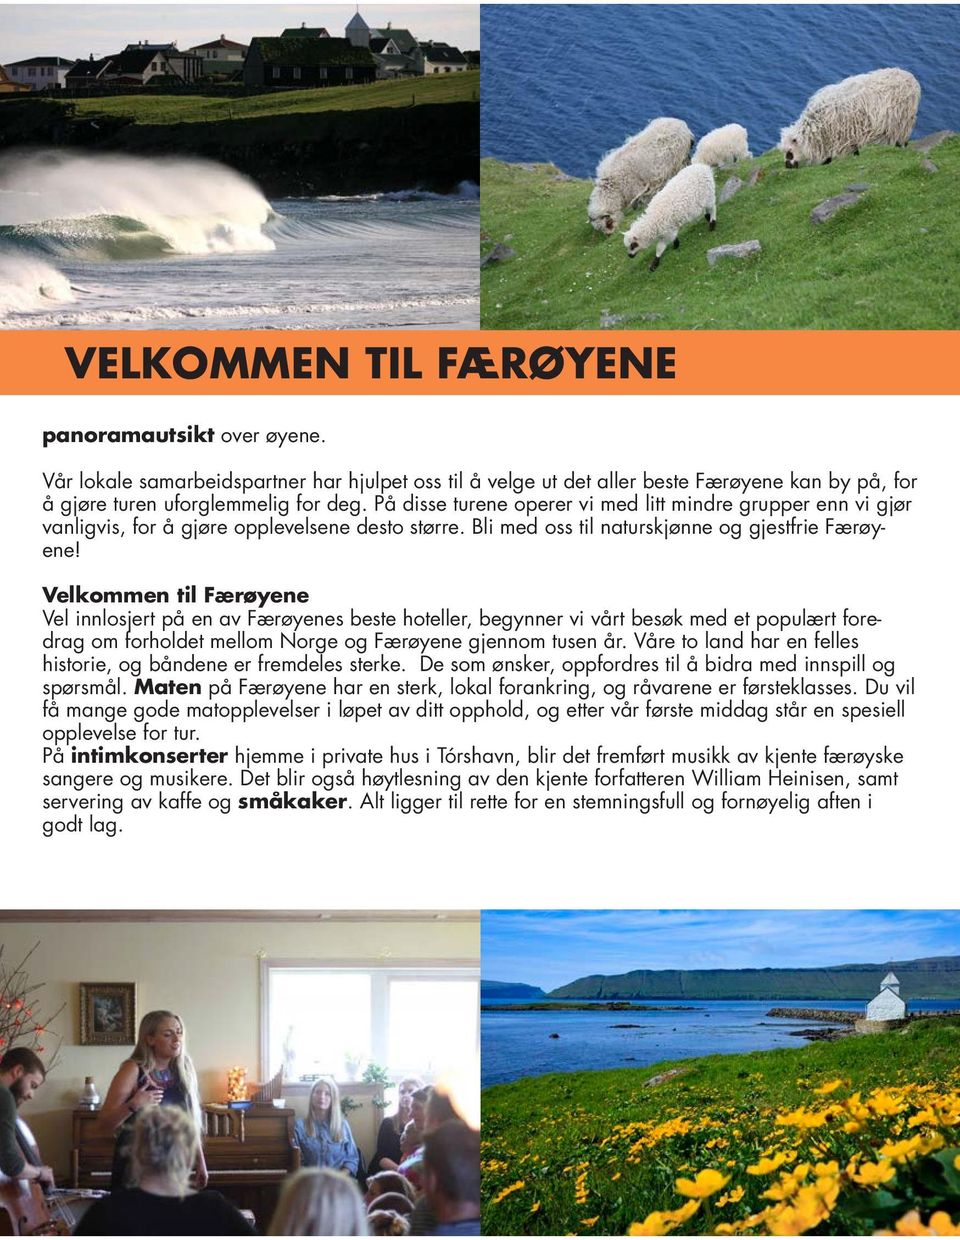 Velkommen til Færøyene Vel innlosjert på en av Færøyenes beste hoteller, begynner vi vårt besøk med et populært foredrag om forholdet mellom Norge og Færøyene gjennom tusen år.